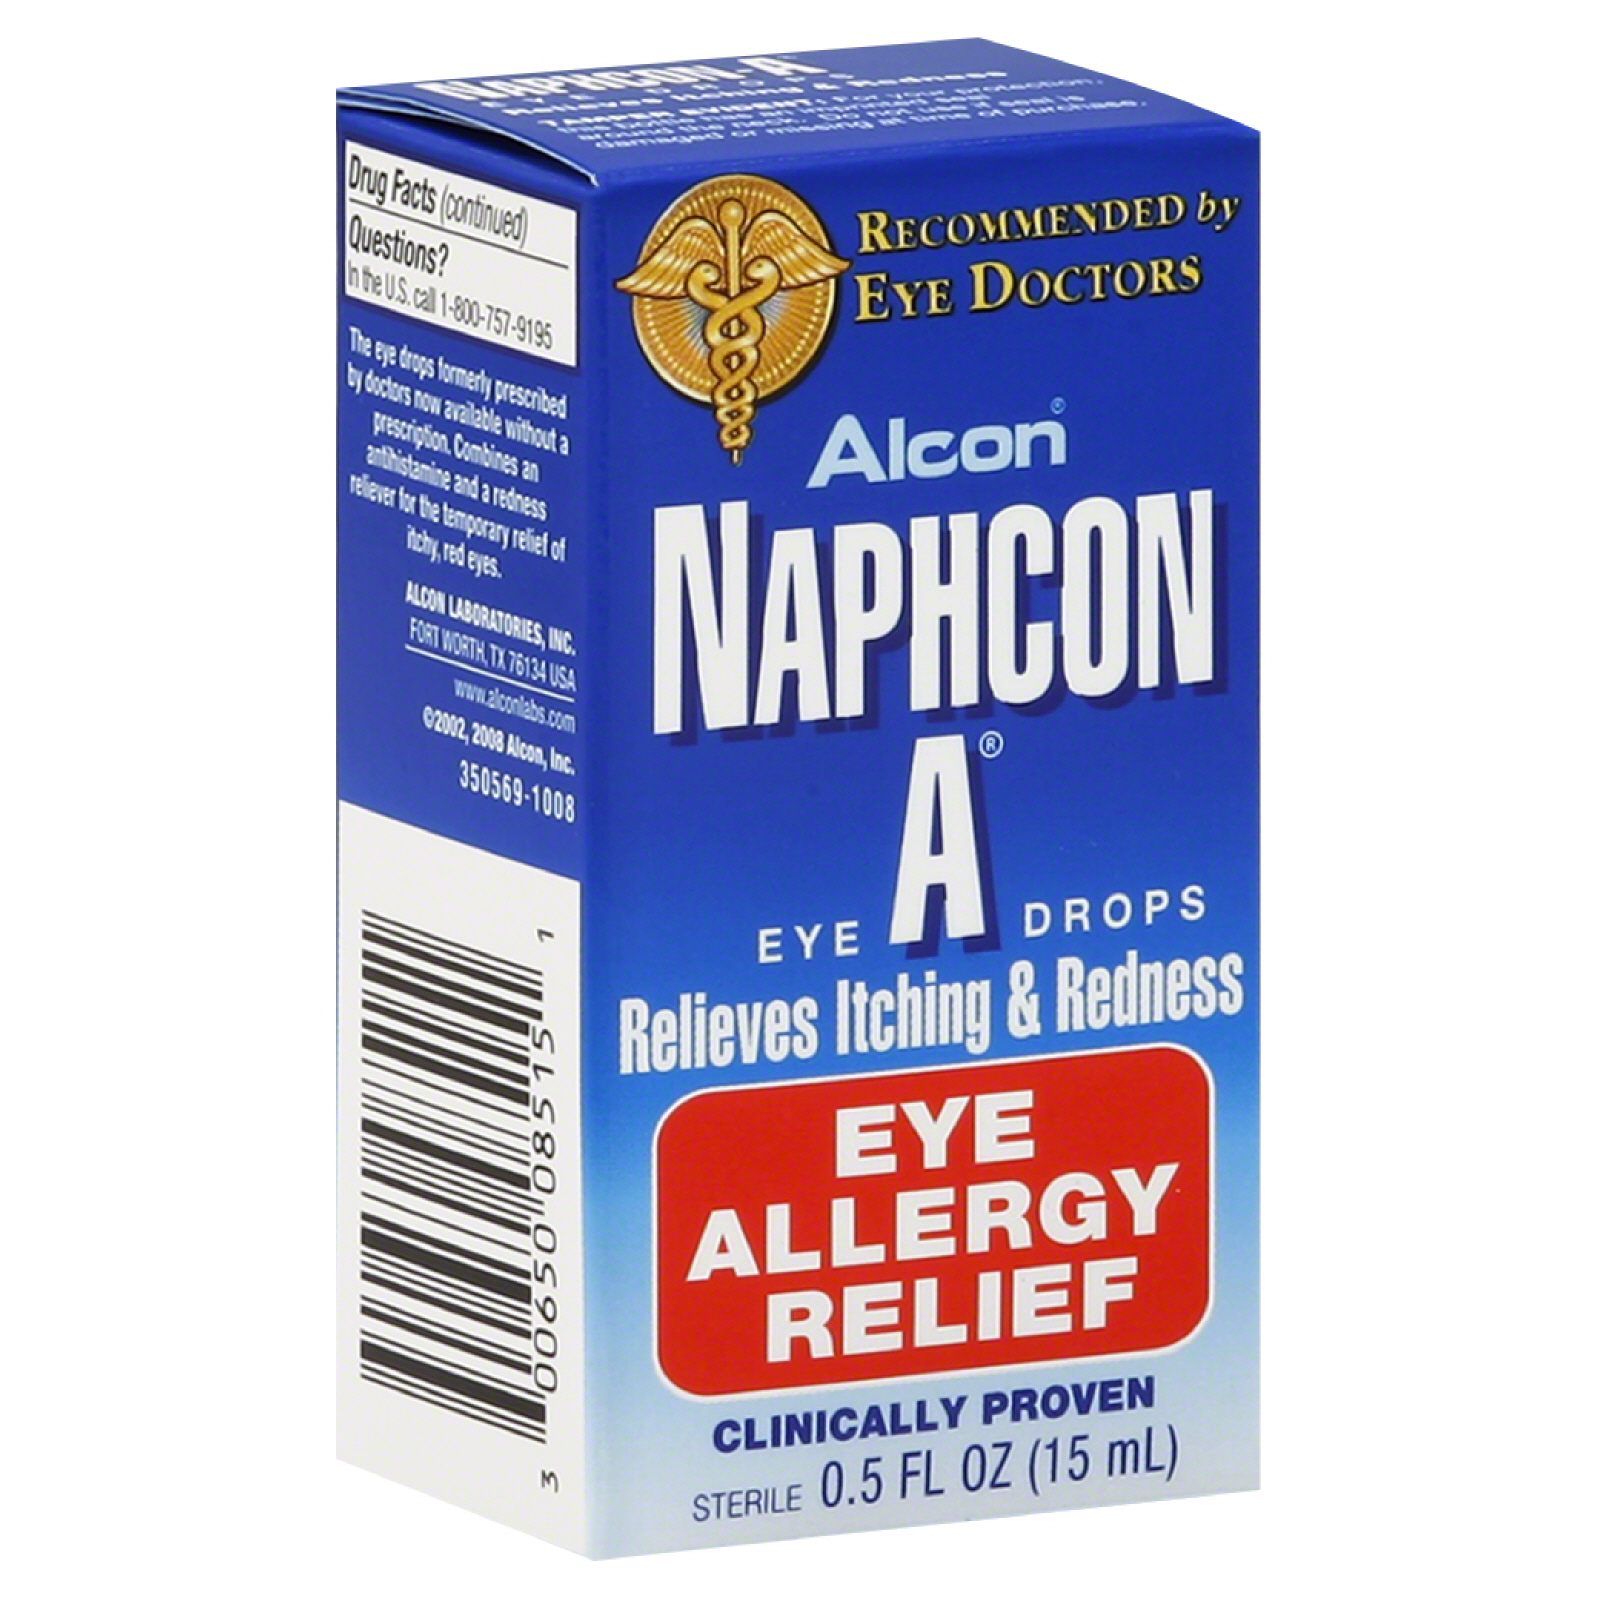 Alcon Naphcon A Eye Drops, Eye Allergy Relief, 0.5 fl oz (15 ml)